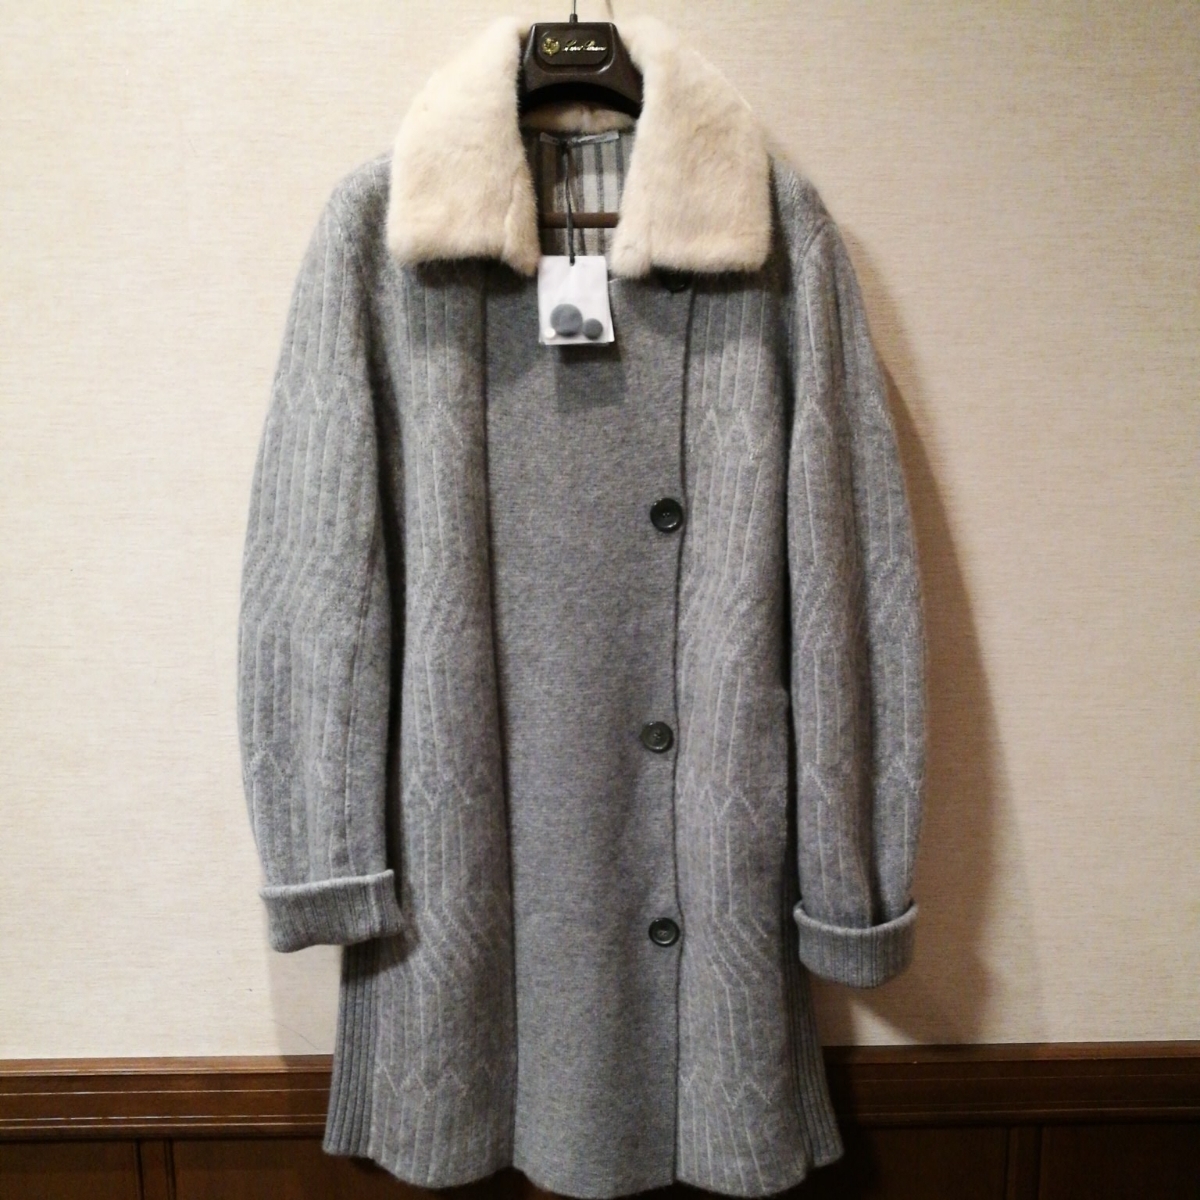 アニオナのミンクのファーのついたカシミアのコートです。 サイズはｍでグレーで新品です。